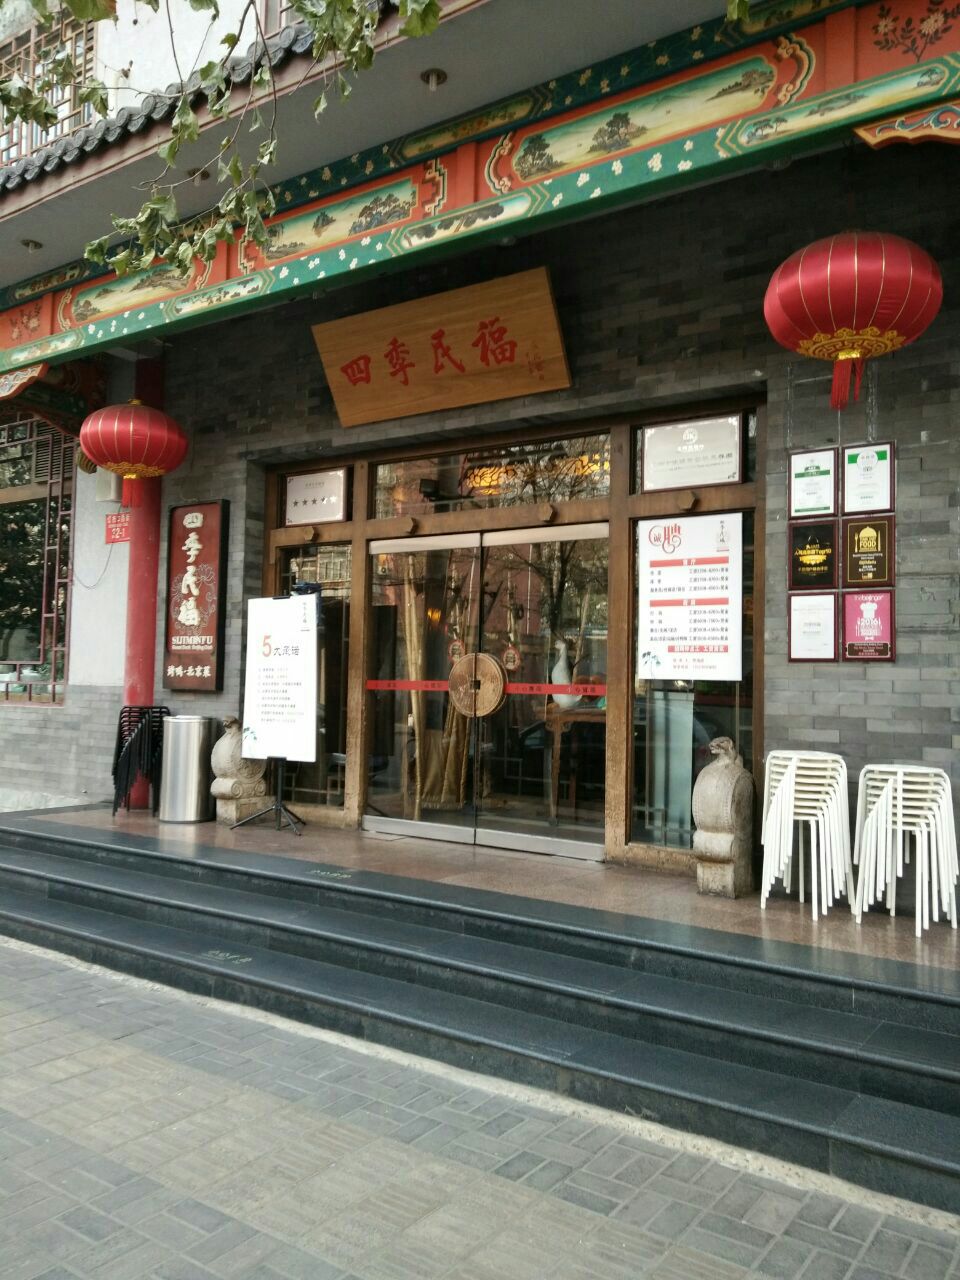 【携程攻略】北京四季民福烤鸭店(灯市口店)好吃吗,四季民福烤鸭店(灯